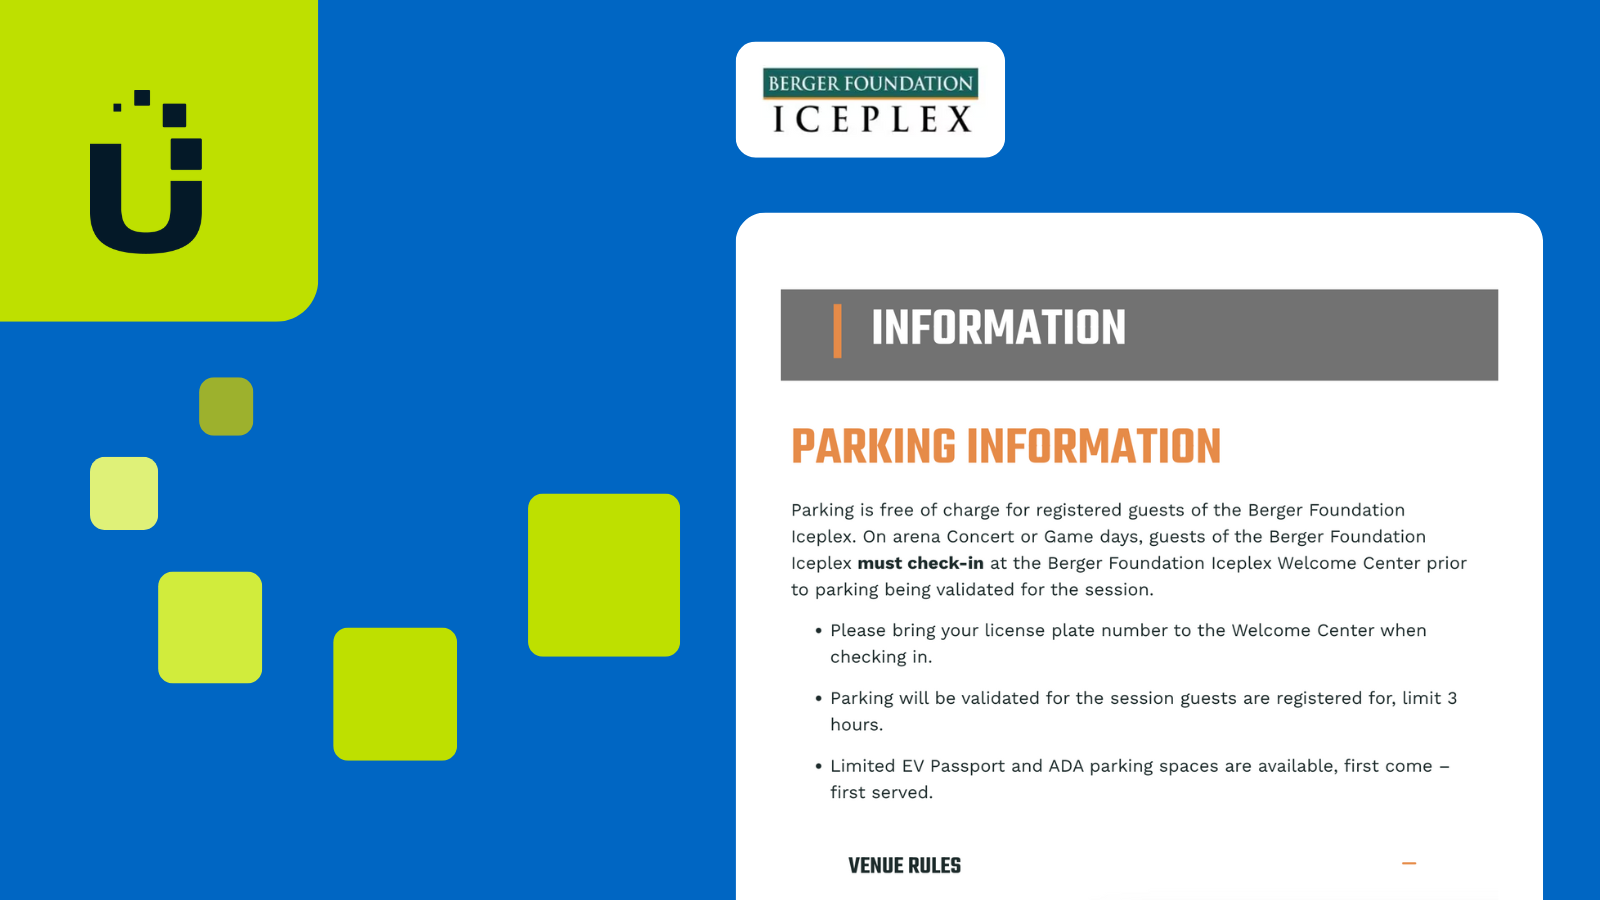 Berger Foundation Iceplex parking information